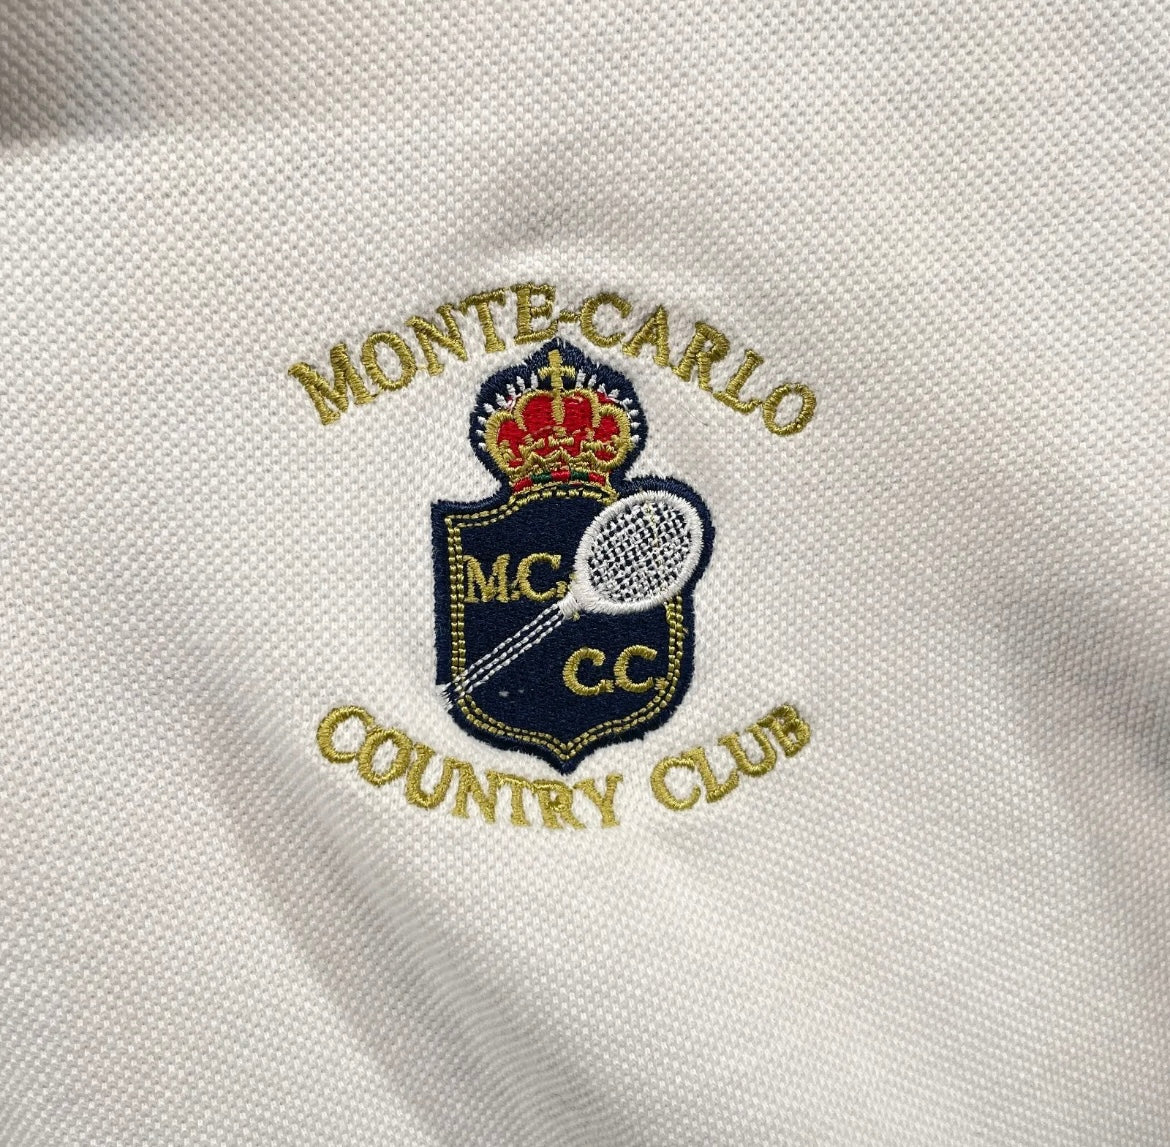 Official Monte-Carlo Country Club Polo (circa 2000s)